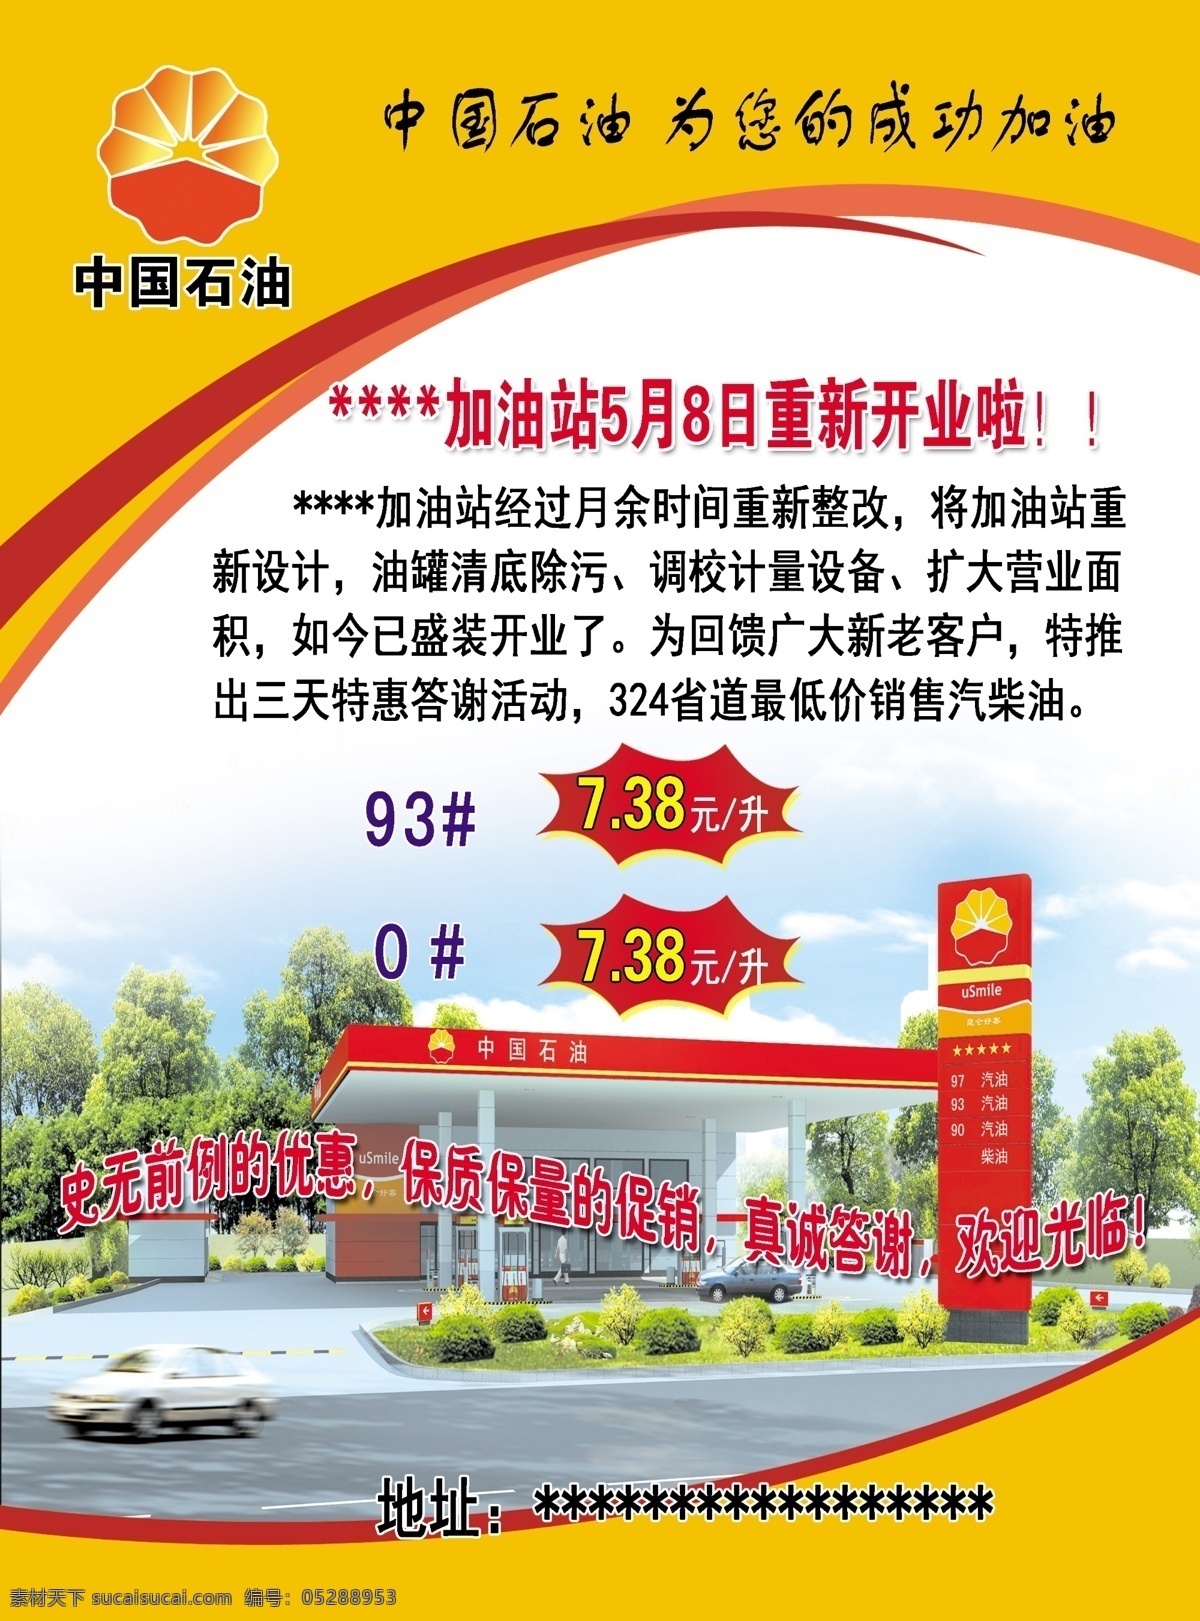 中国 石油 加油站 宣传 中国石油 中石油 加油机 加油站宣传 汽油 柴油 加油站开业 分层